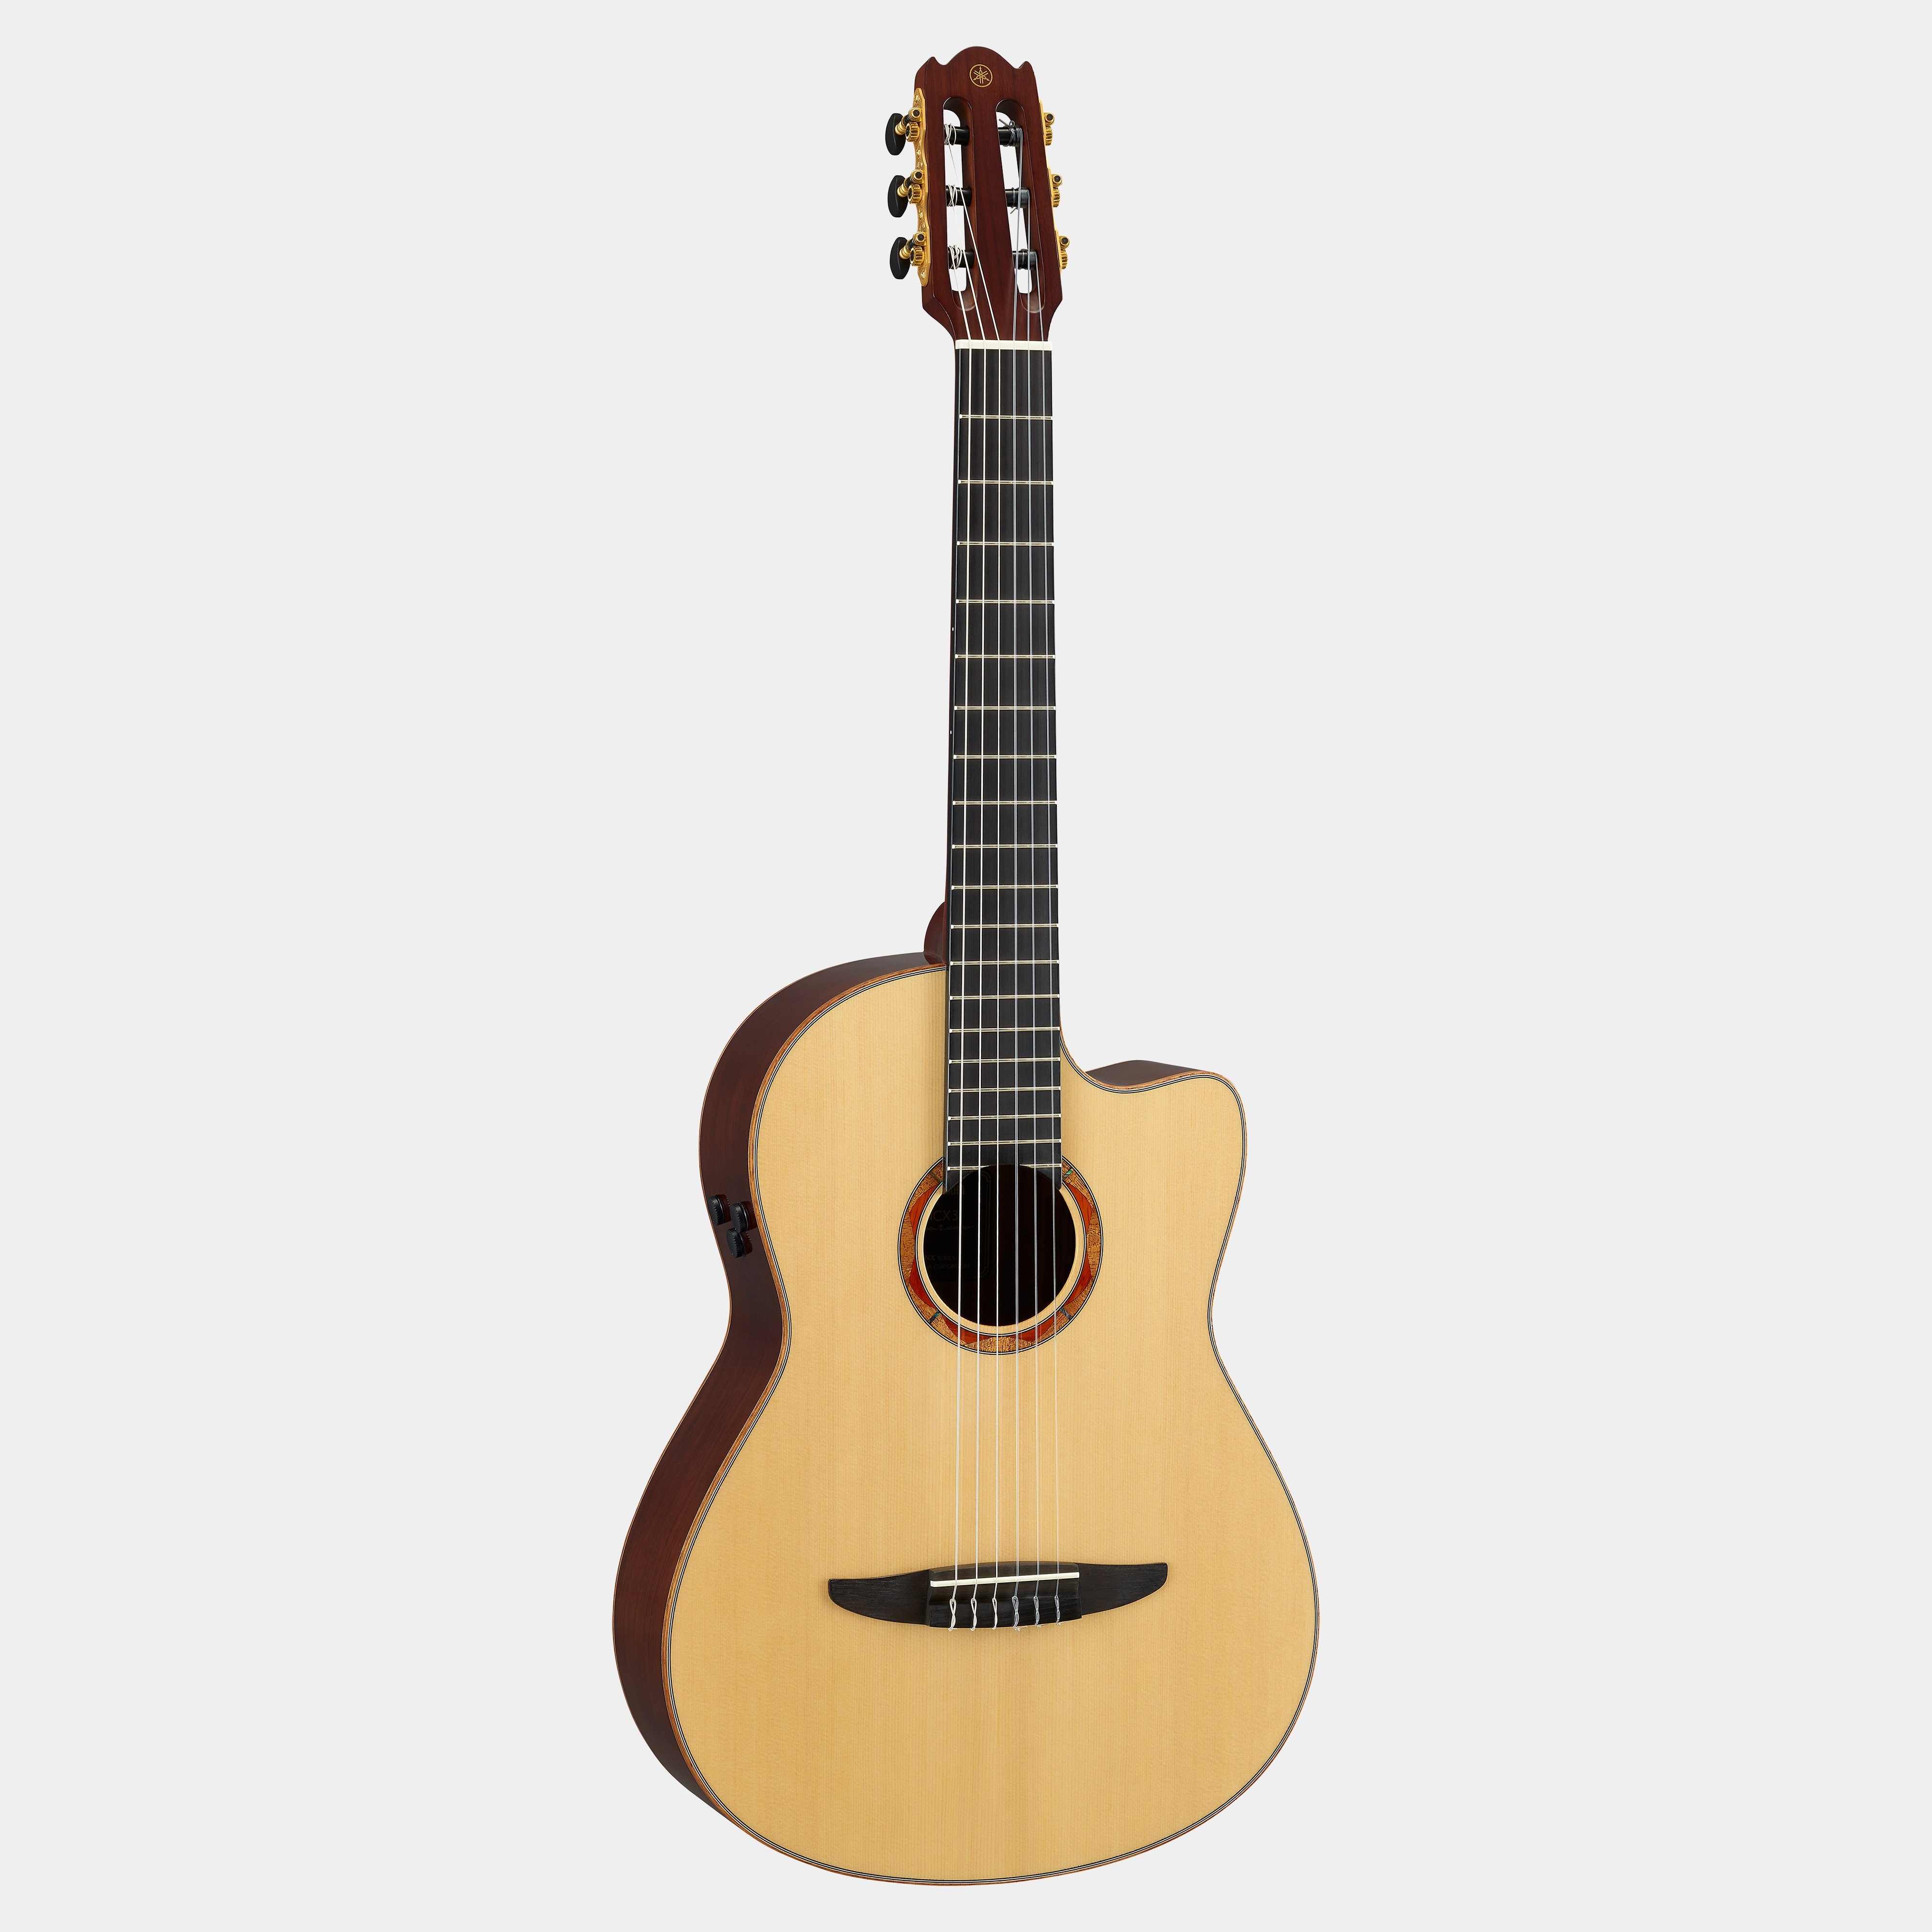 Serie NX - Descripción - Clásicas y con cuerdas de nailon - Guitarras, Bajos y Amplificadores - Instrumentos - Productos - Yamaha - España